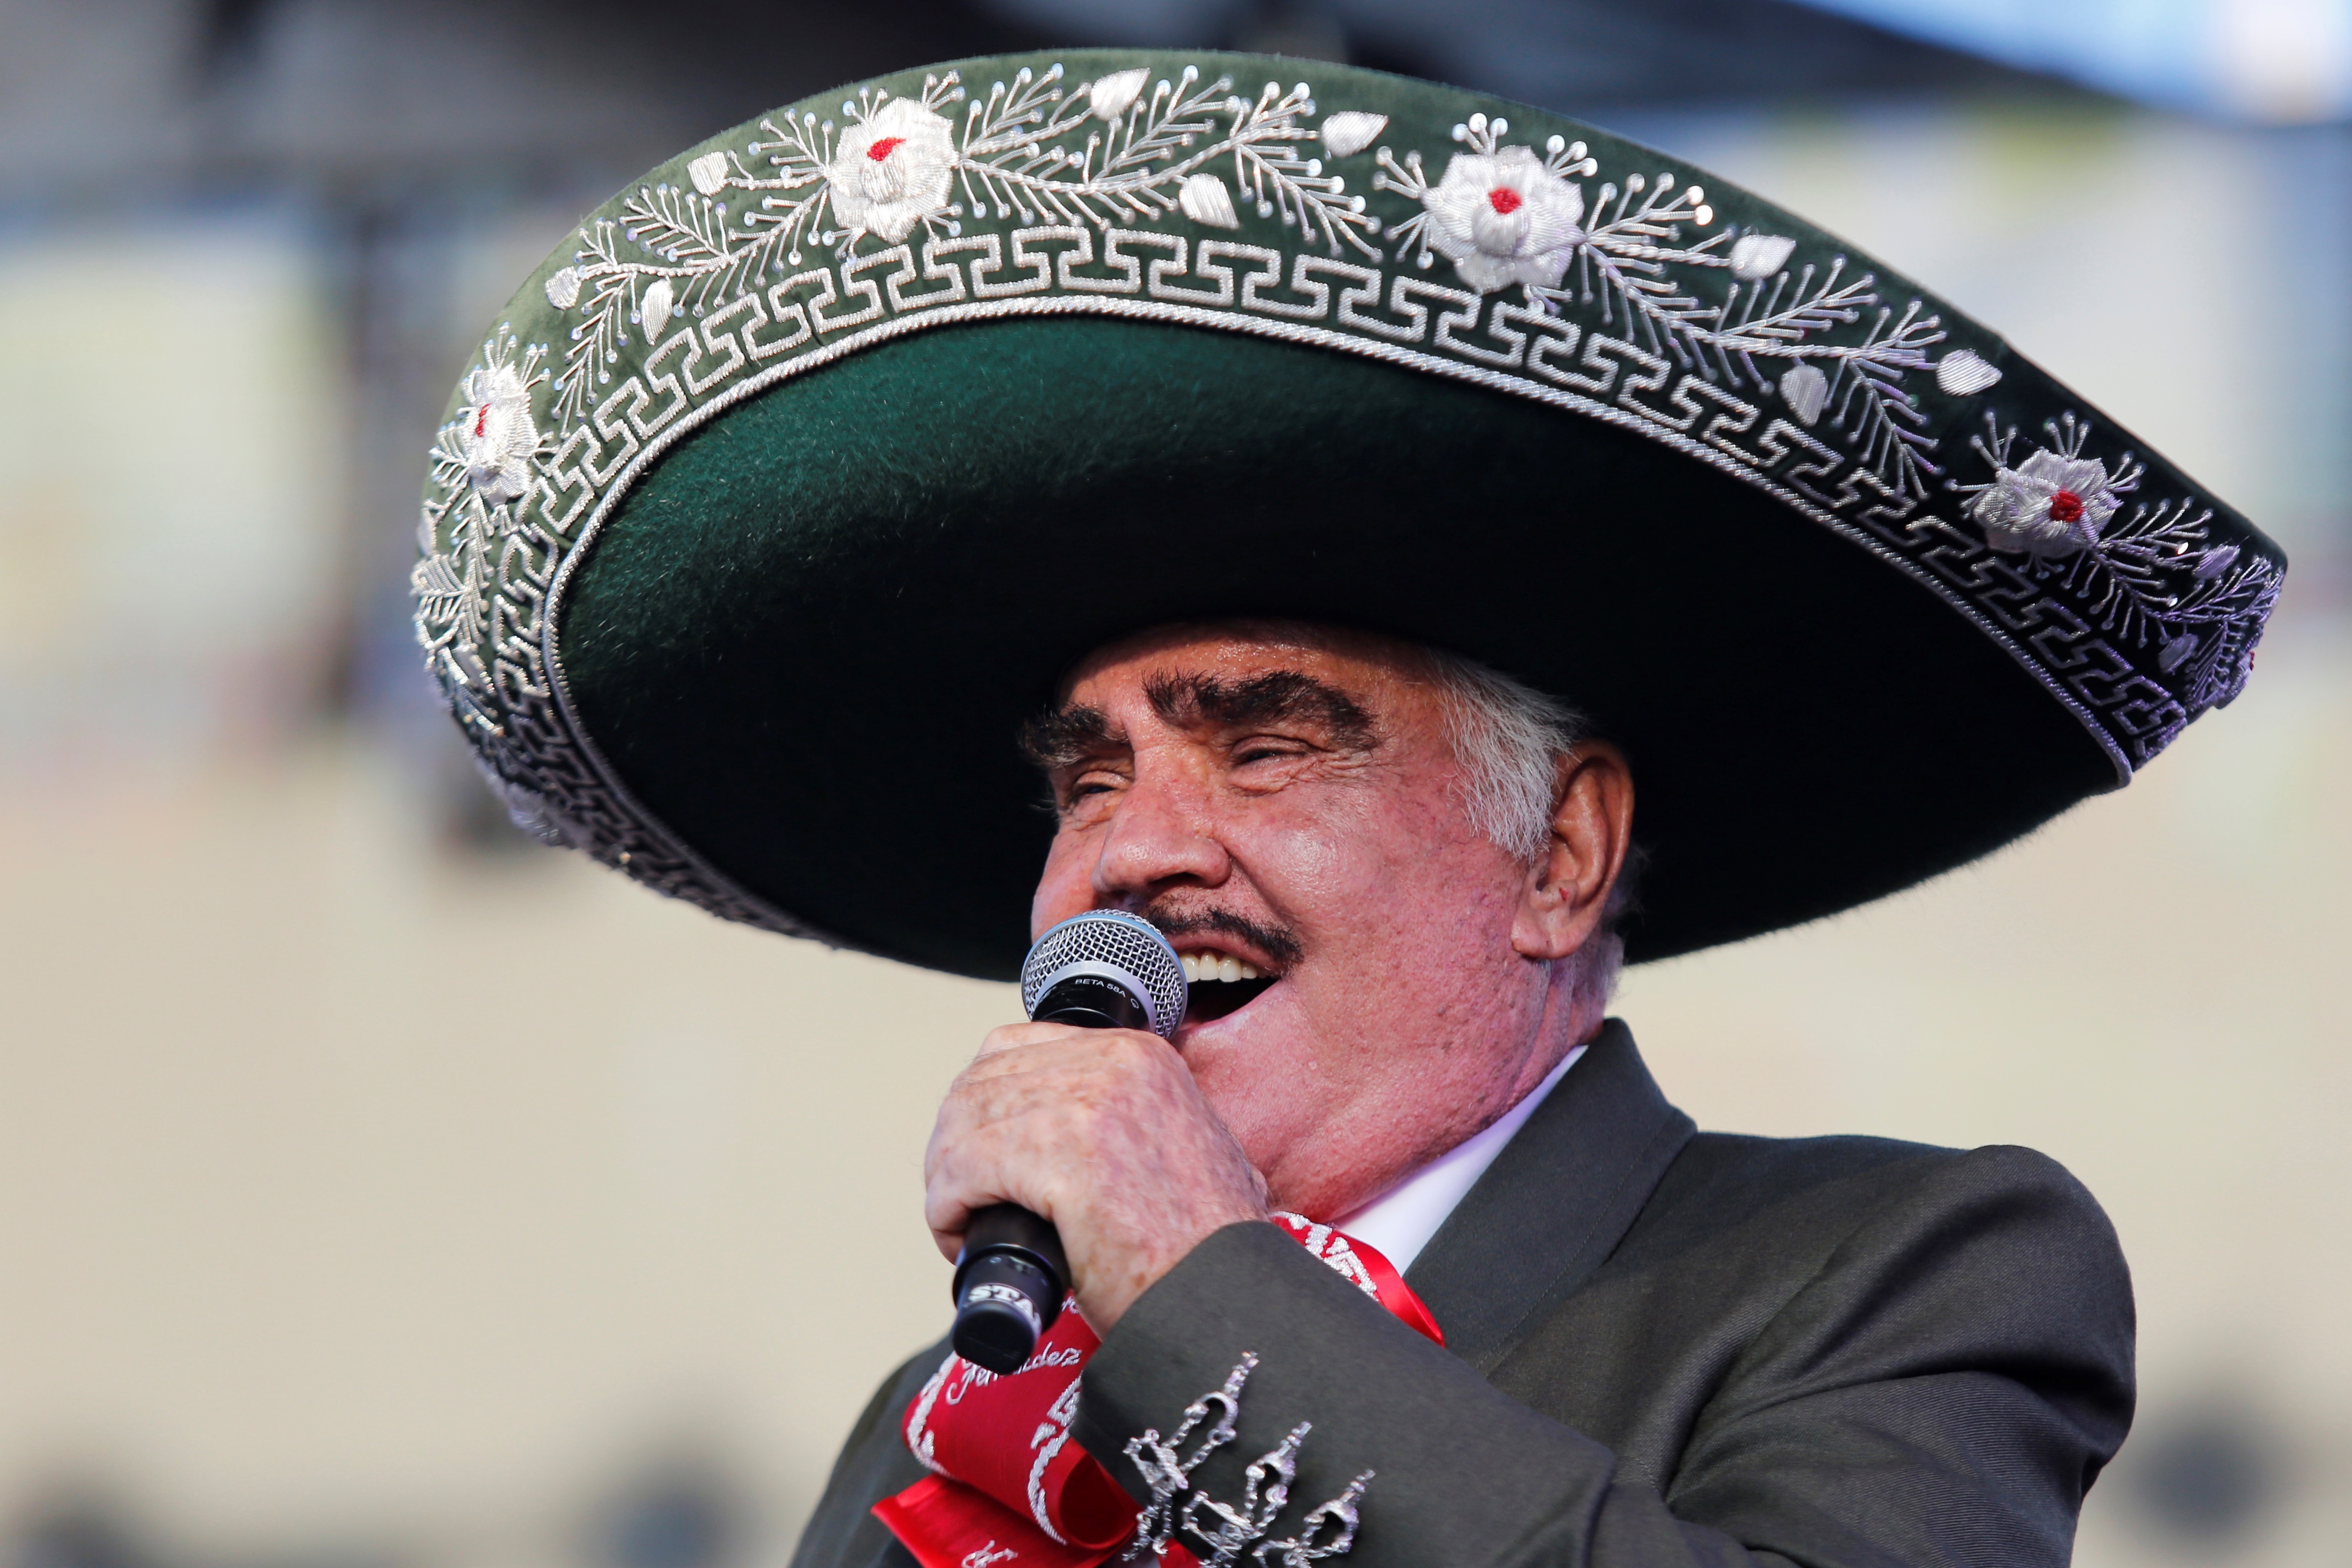 La famiglia del cantante disapprova il fascicolo fotografico della Bioseries datato 6 ottobre 2019, del cantante messicano Vicente Fernández durante un concerto nella città di Guadalajara, nello stato occidentale di Jalisco (Messico).  EFE / Francisco Guasco